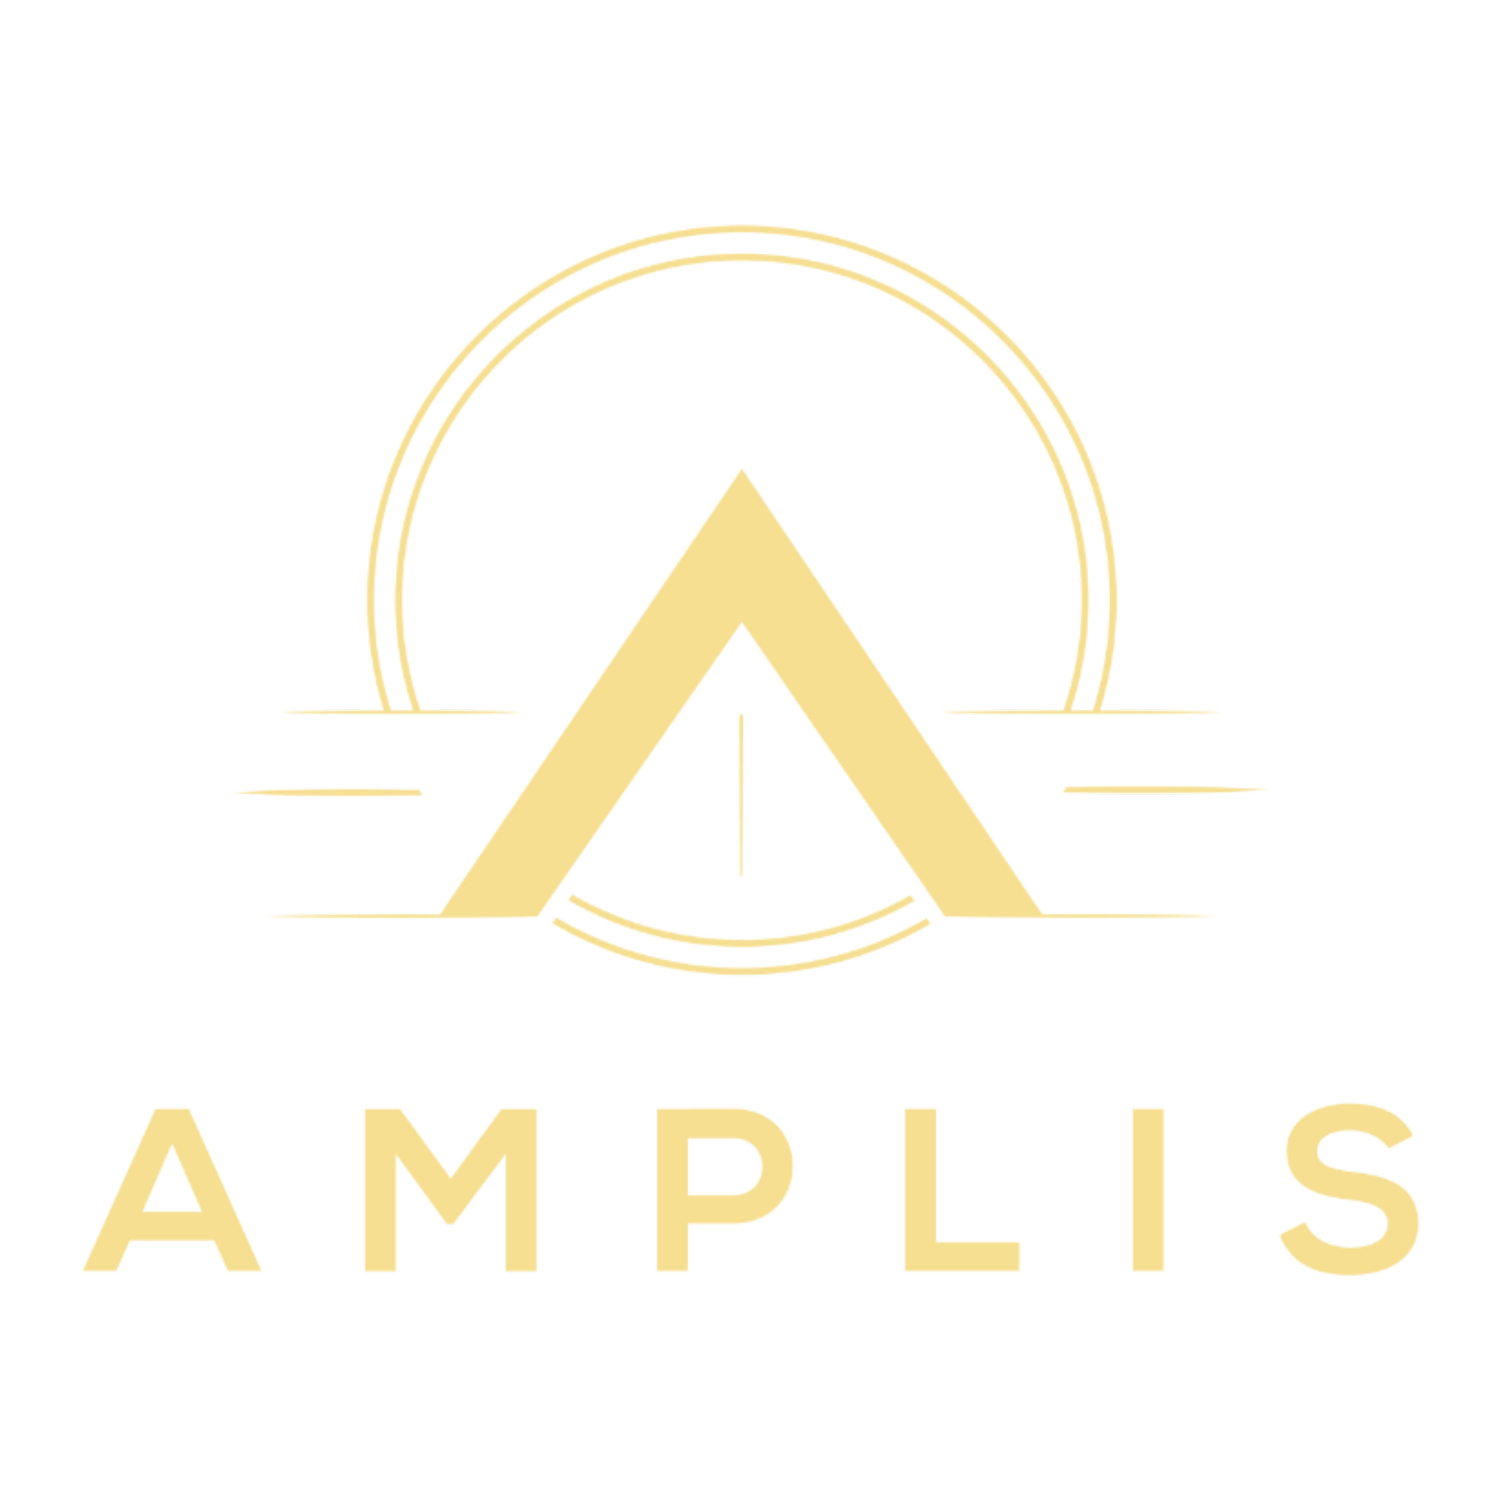 AMPLIS